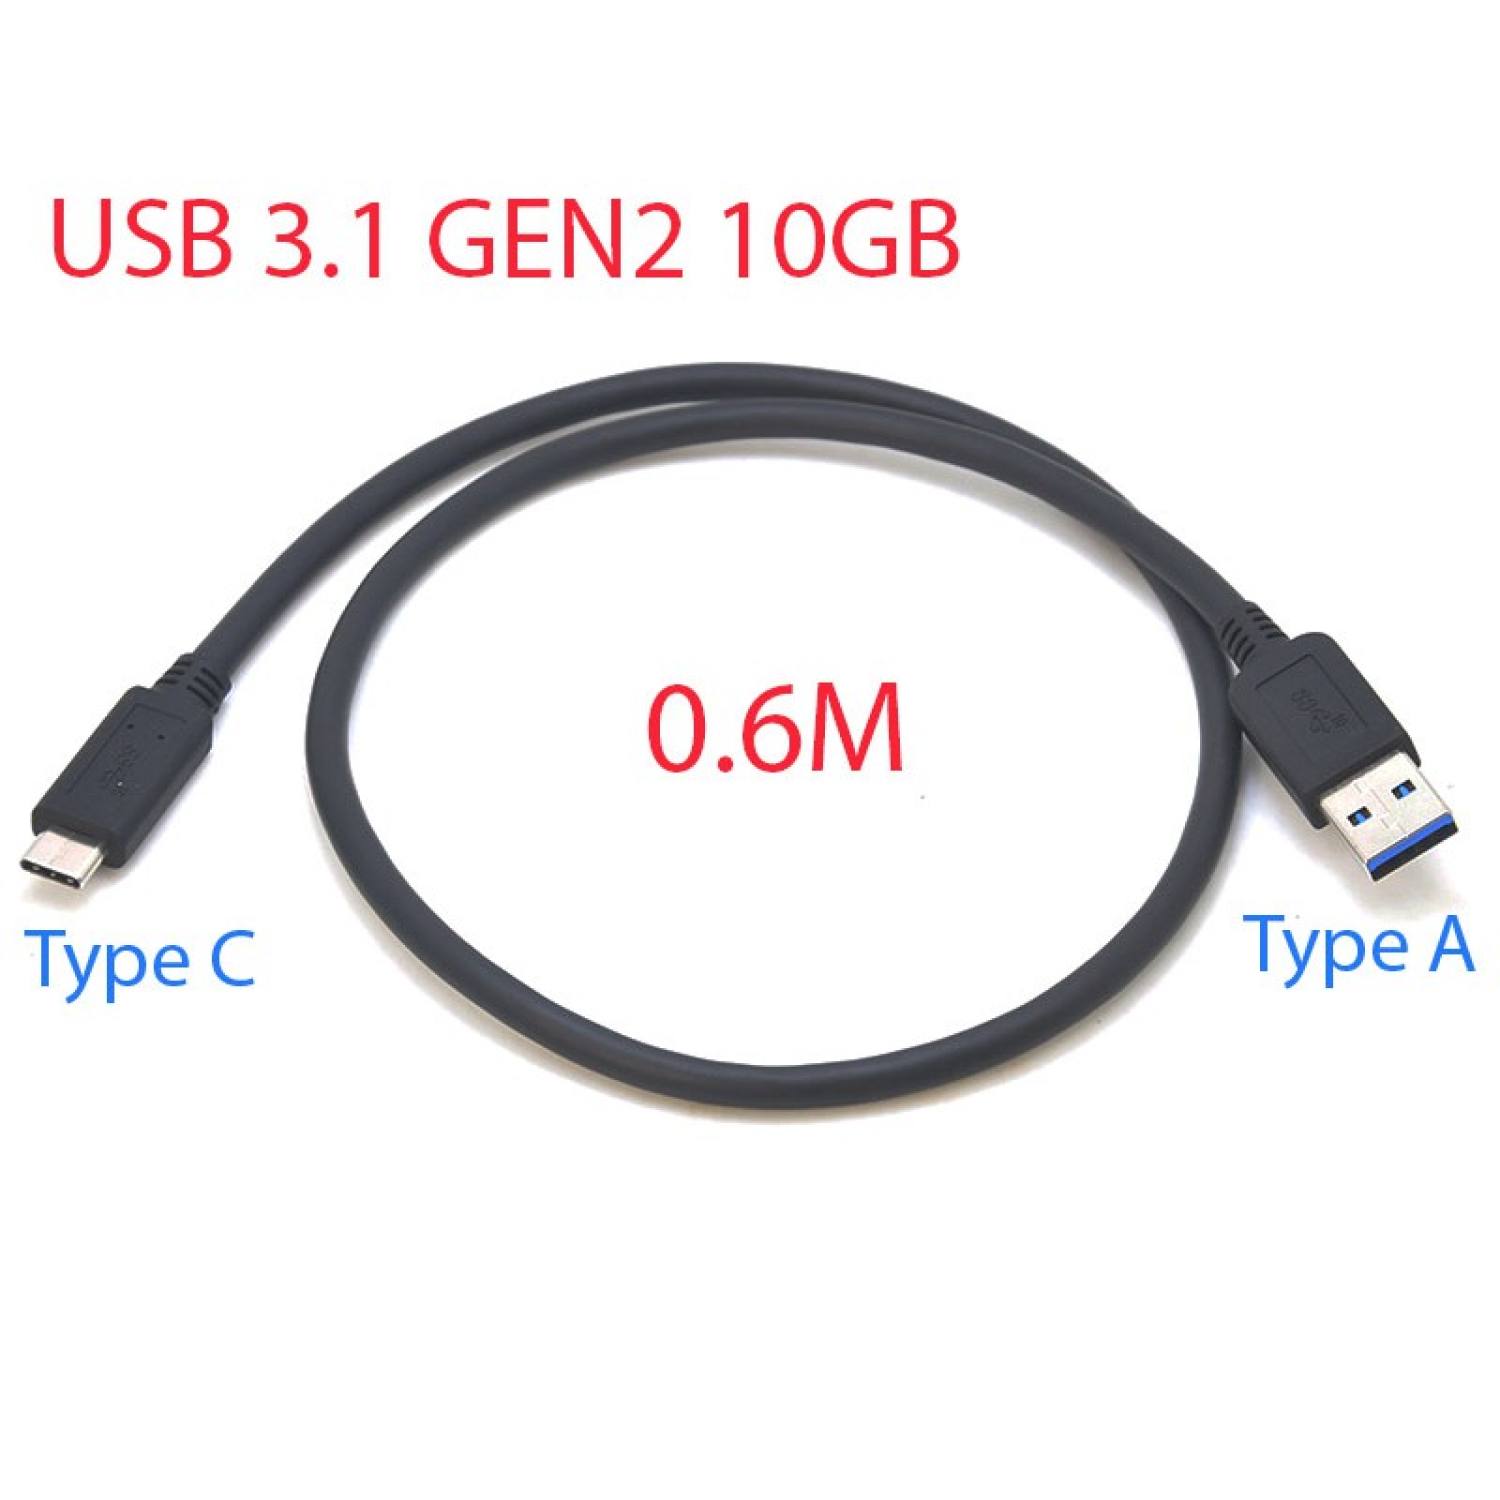 Cáp USB 3.1 GEN2 10GB Type A-C dài 0.6M chuyên dùng SSD Box, NVME Box tốc độ cao